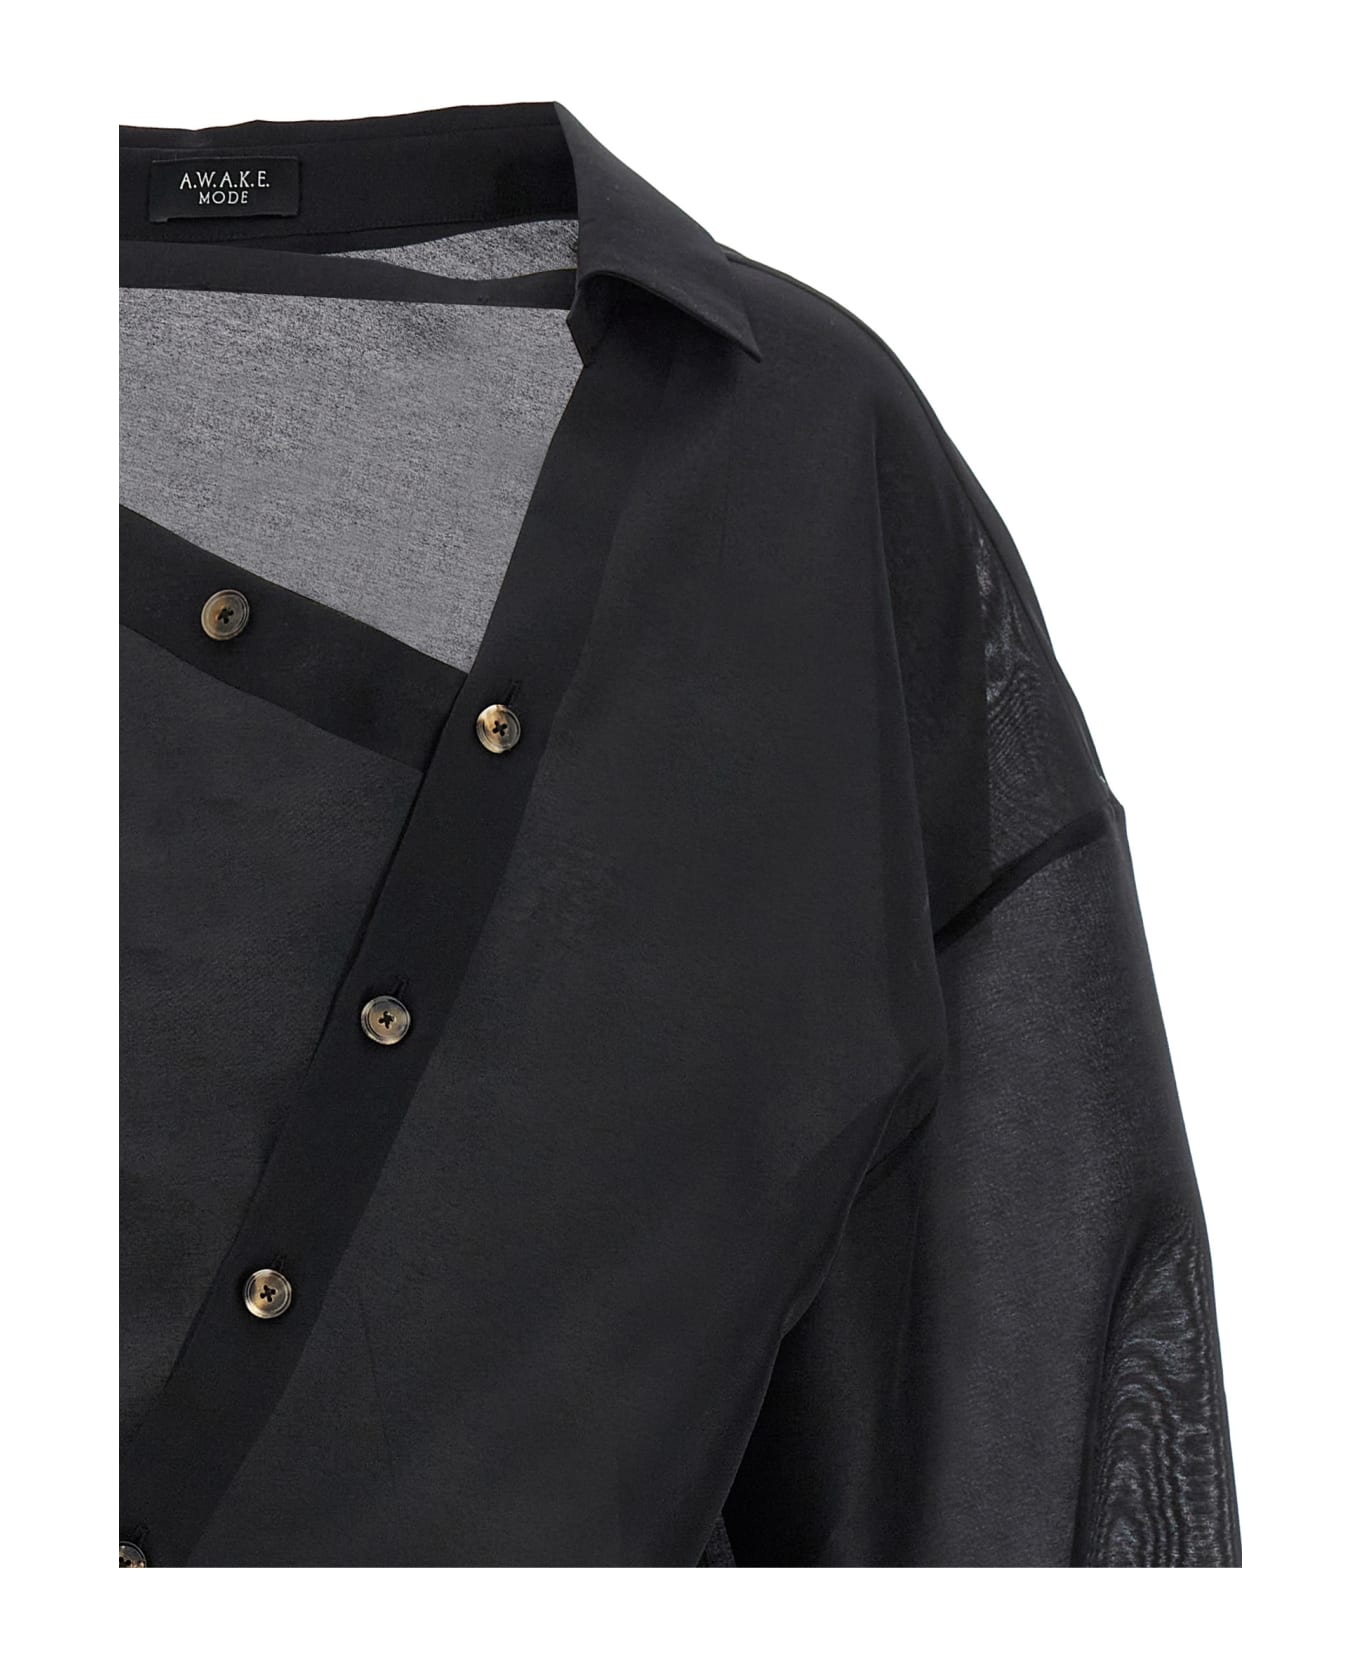 A.W.A.K.E. Mode Asymmetric Shirt - Black   シャツ